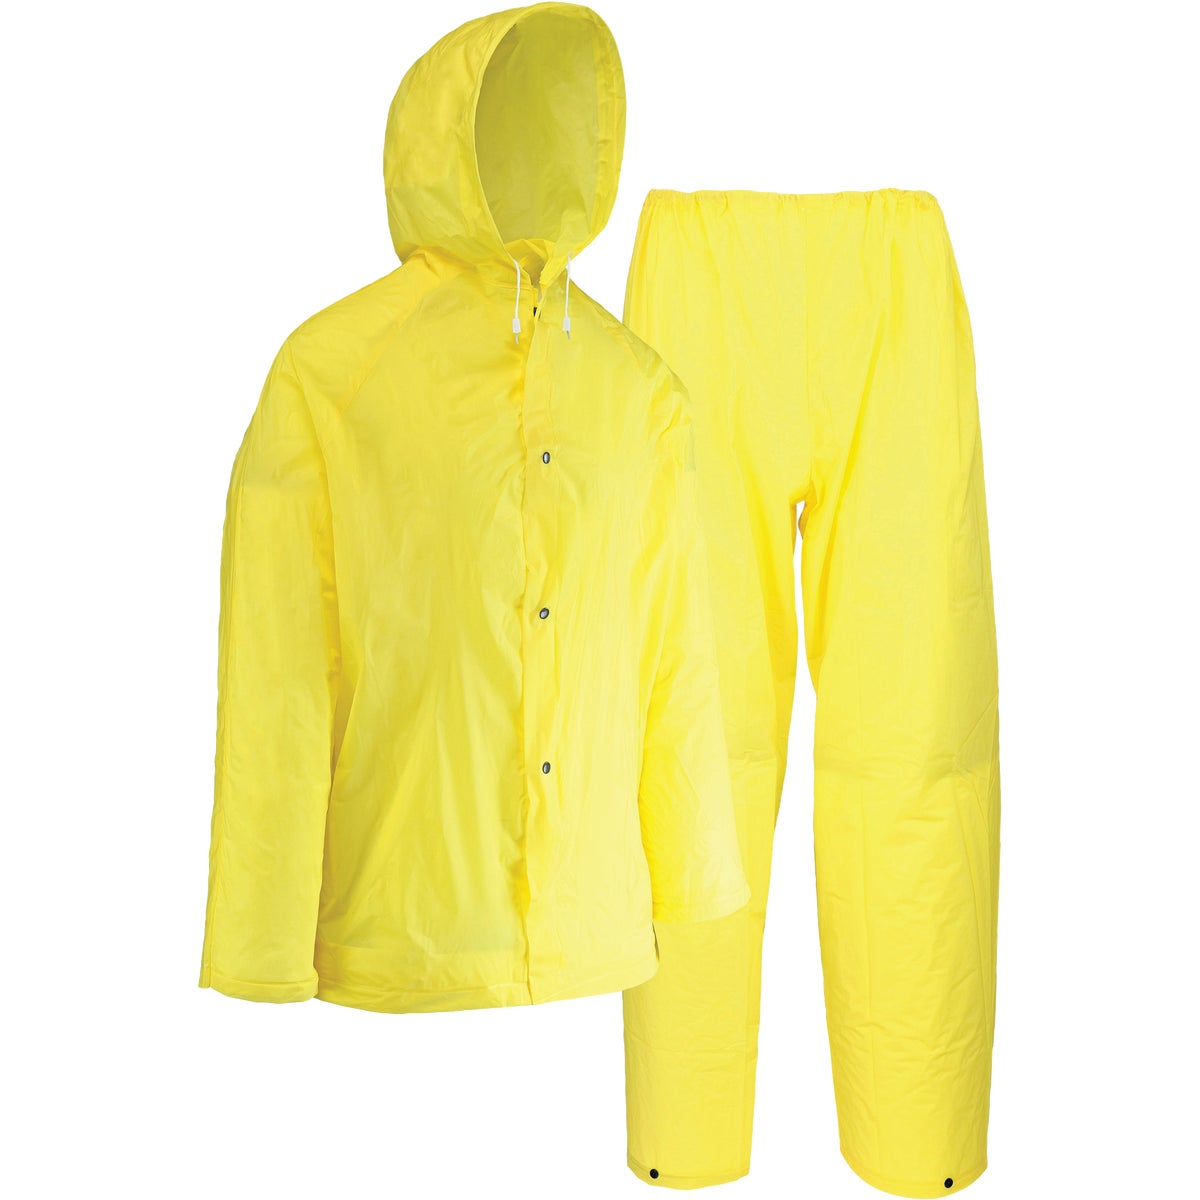 Item 765158, 2-piece lightweight rain suit.